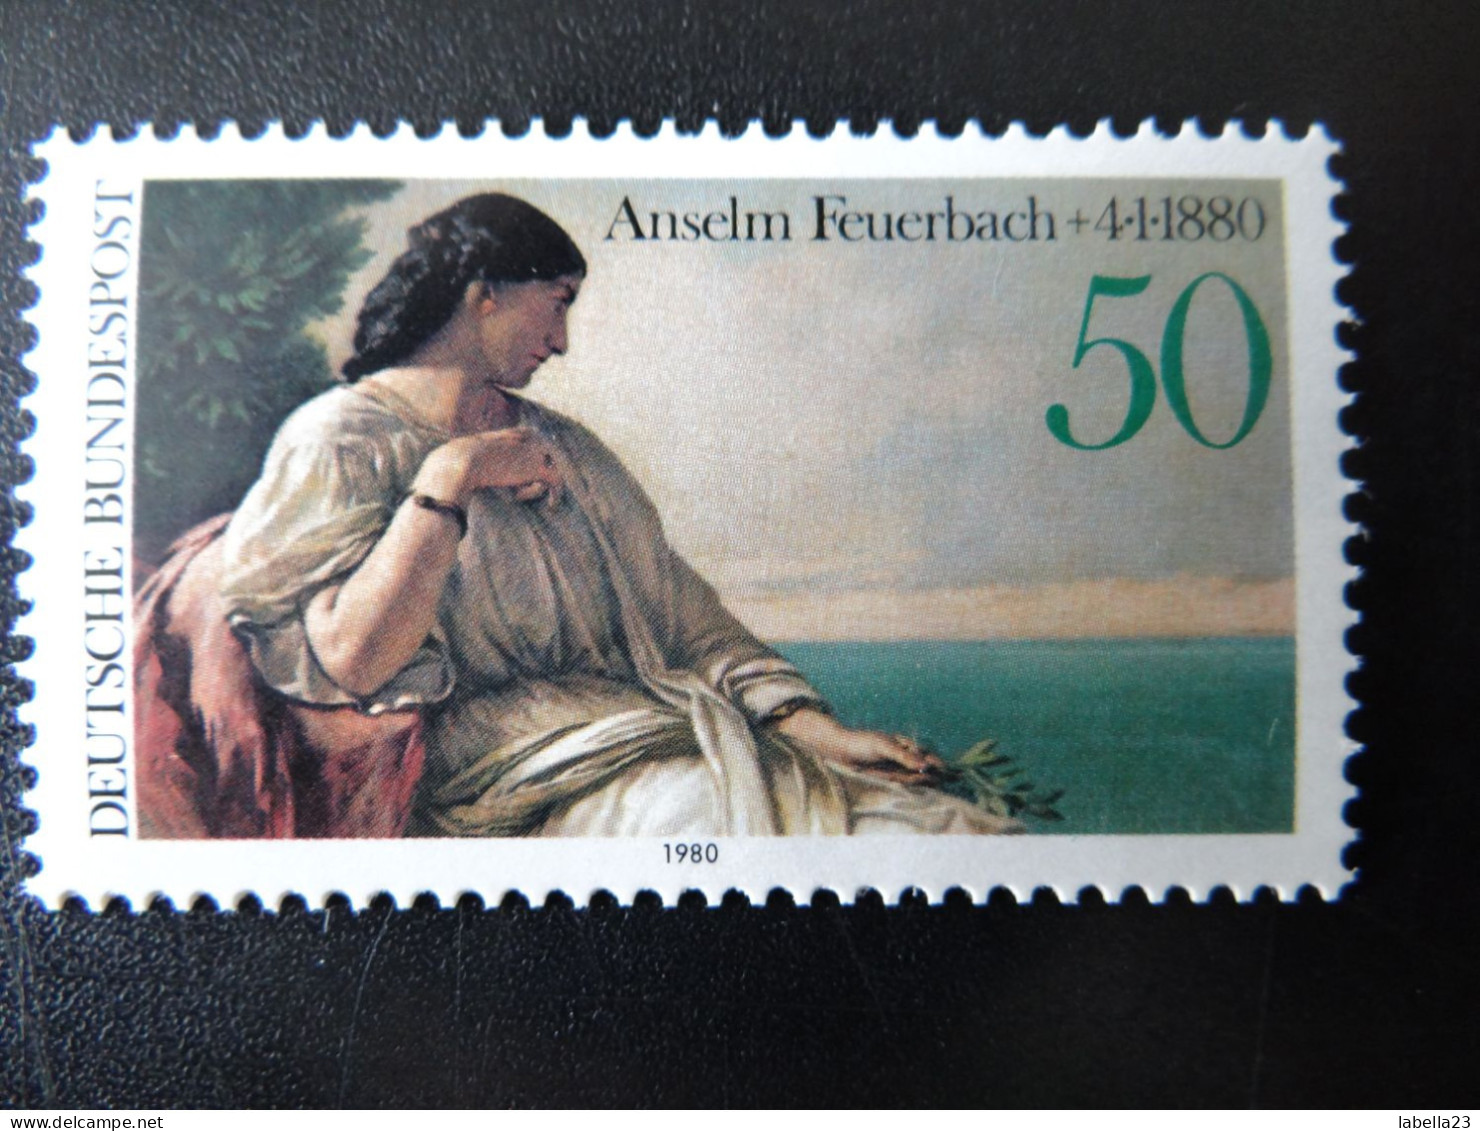 1980 Bund,  - Anselm Feuerbach - Iphigenie - Postfrisch - MiNr. 1033 - Impressionisme